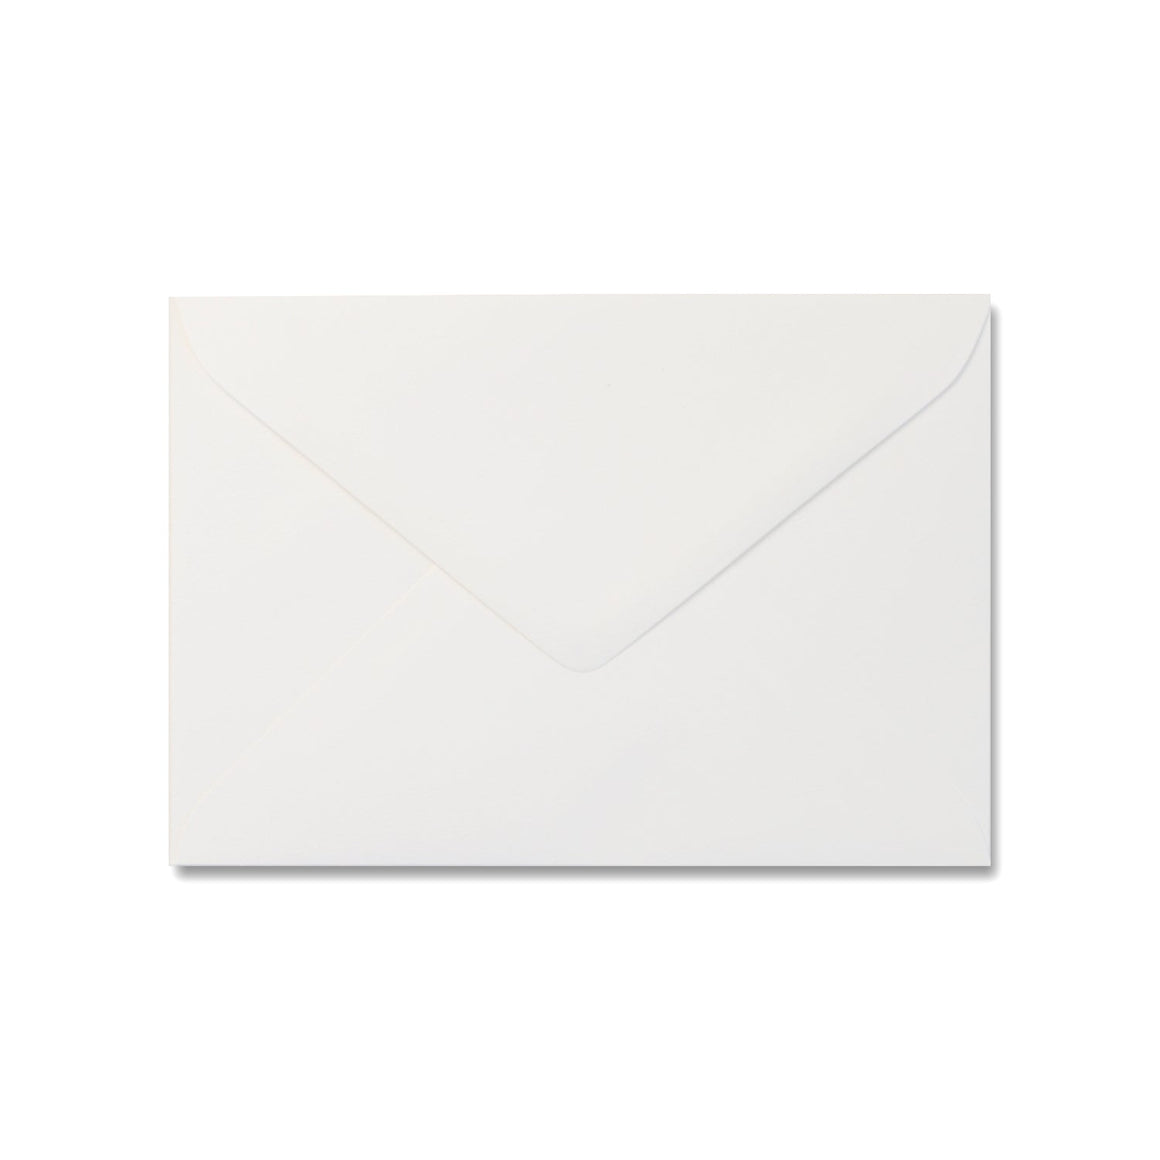 C5 Felt White Envelopes for Wedding Invitations